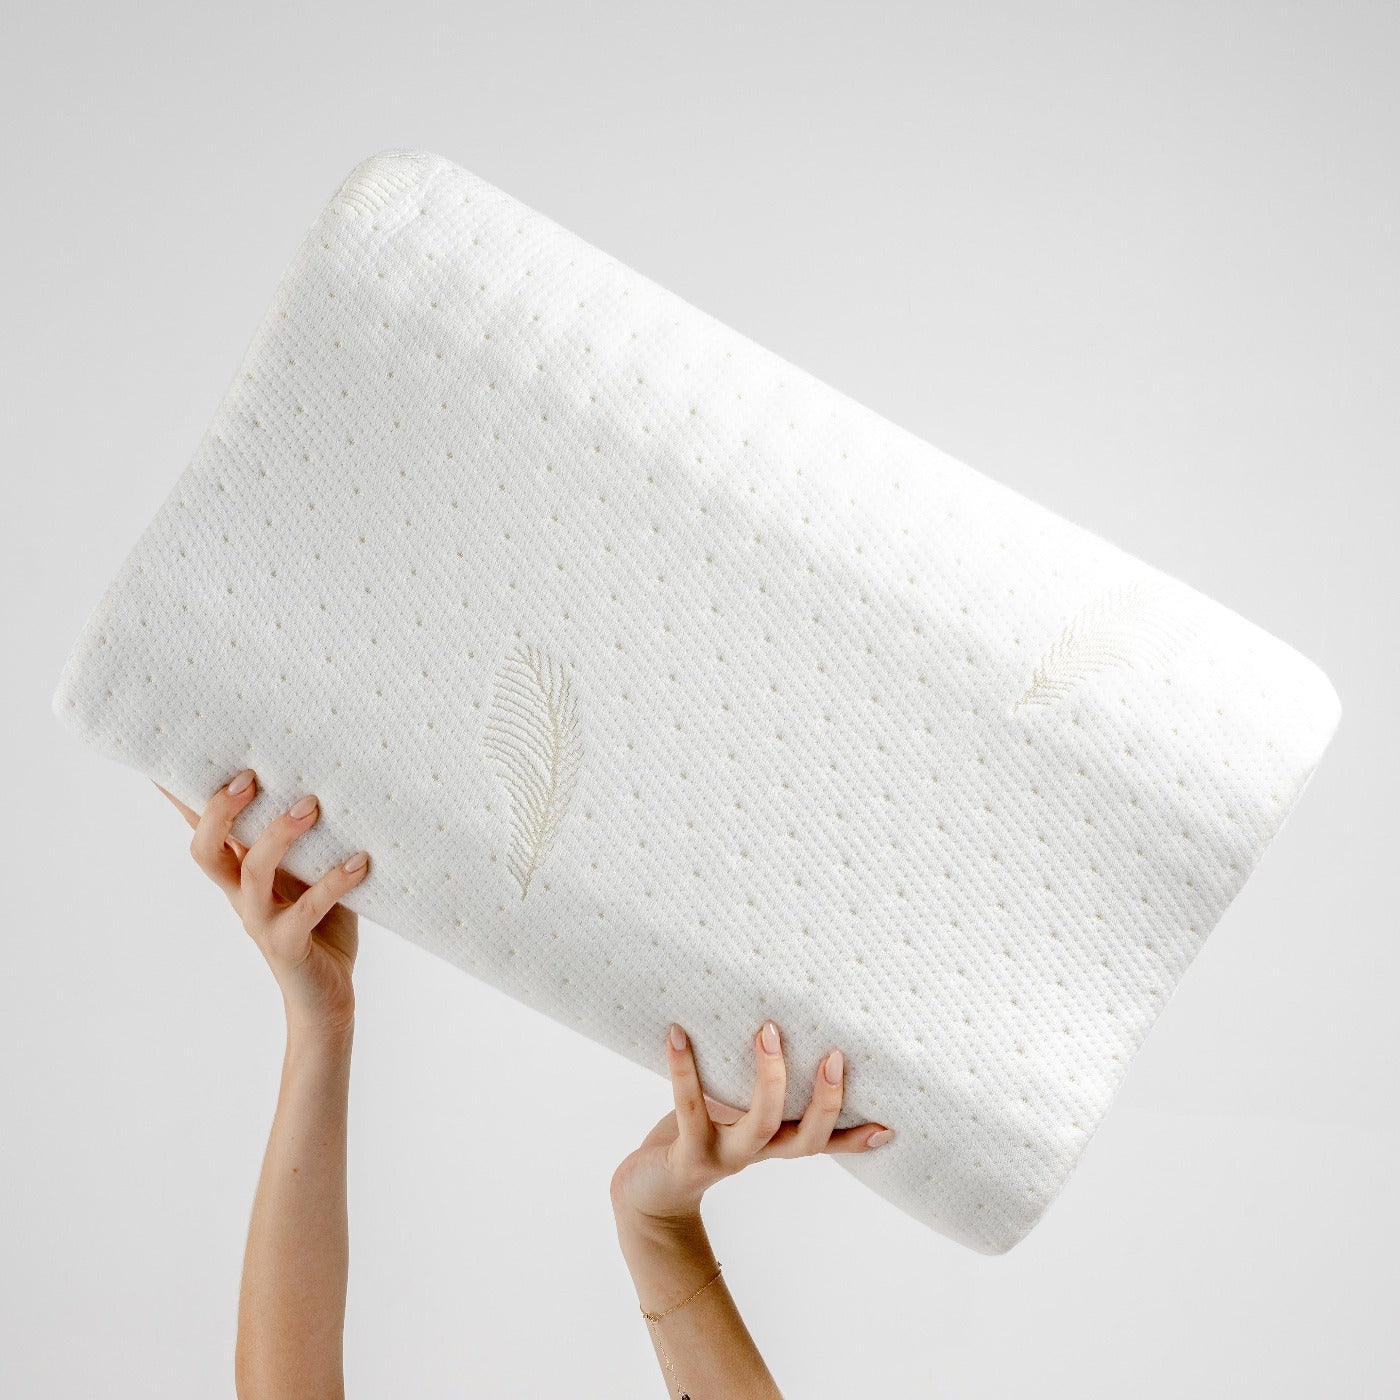 How Long Do Foam Pillows Last